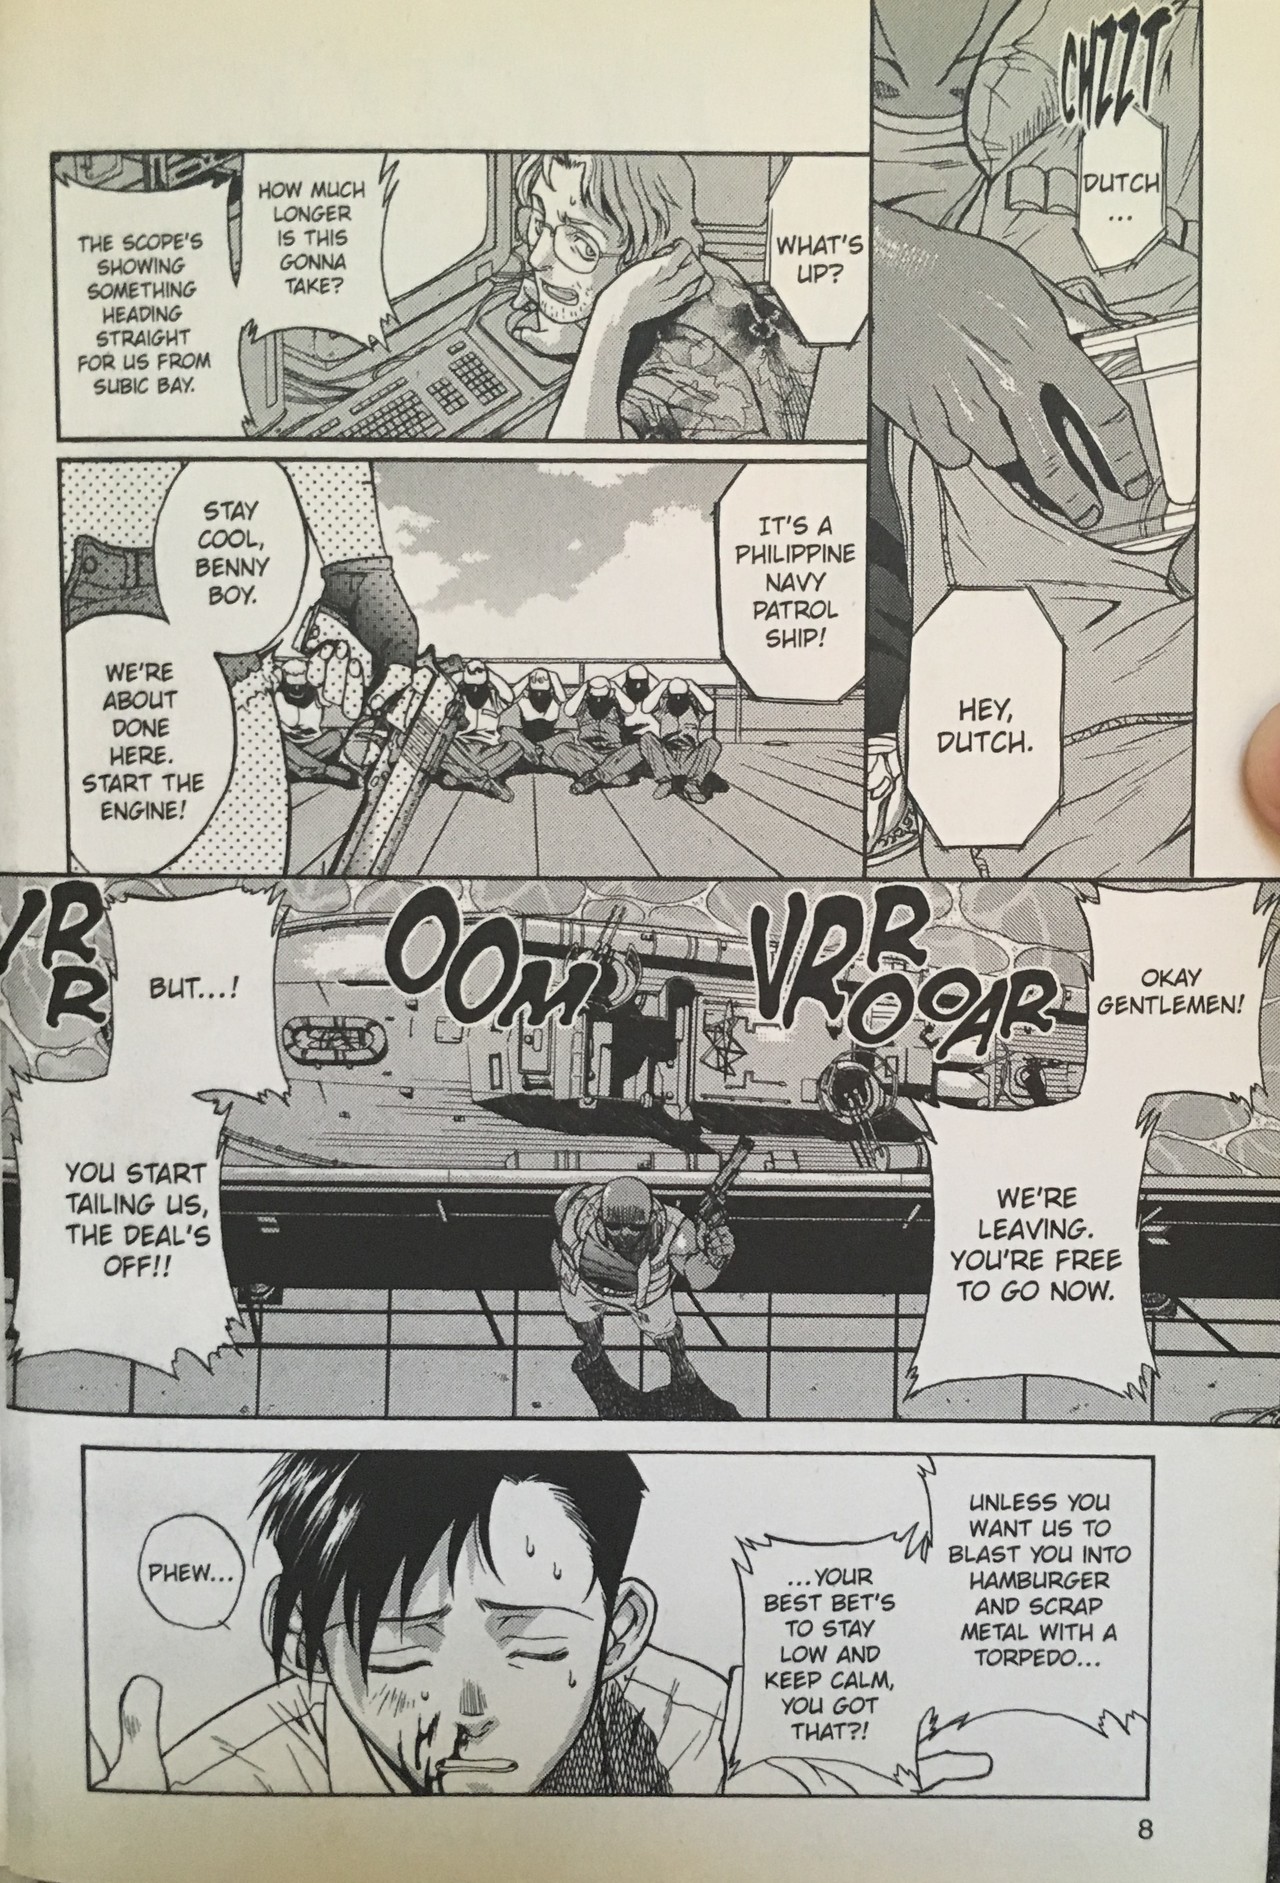 Manga で英語学習３ページ目 たかぎ Note